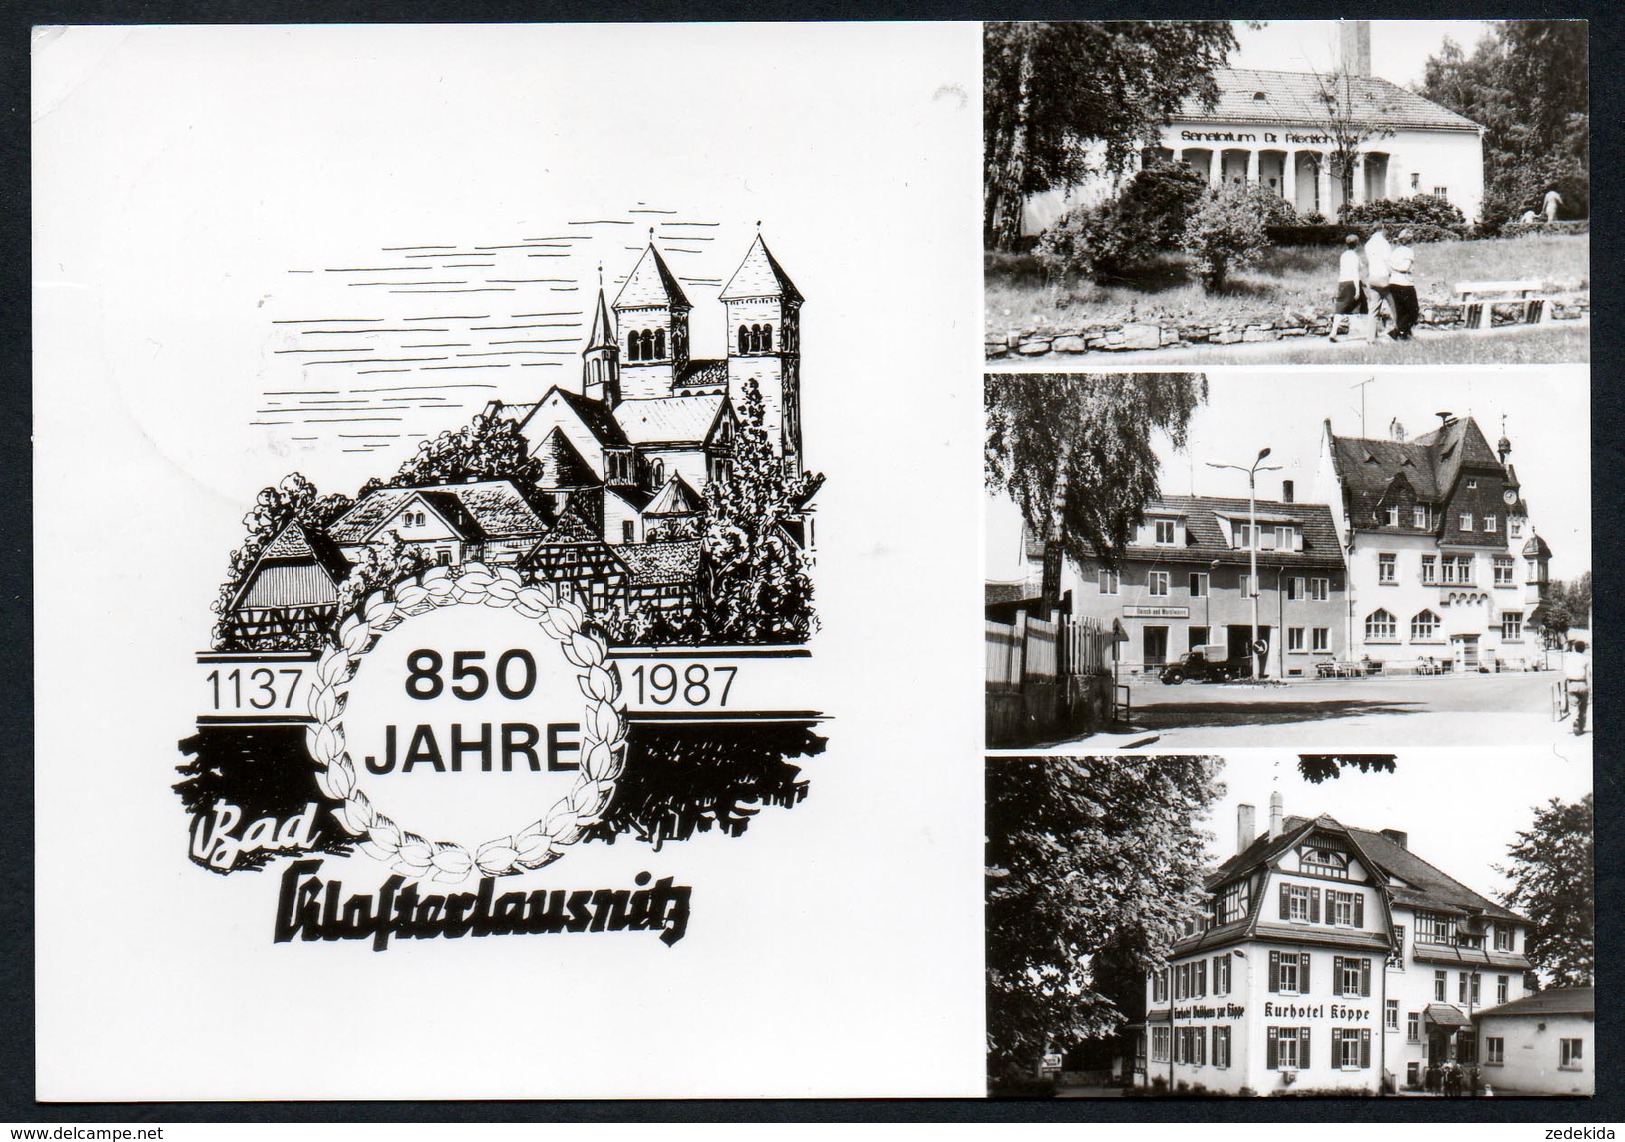 A0219 - Alte MBK Ansichtskarte - Anlaßkarte 850 Jahre Bad Klosterlausnitz - Gel 1987 Sonderstempel - Schincke - Bad Klosterlausnitz